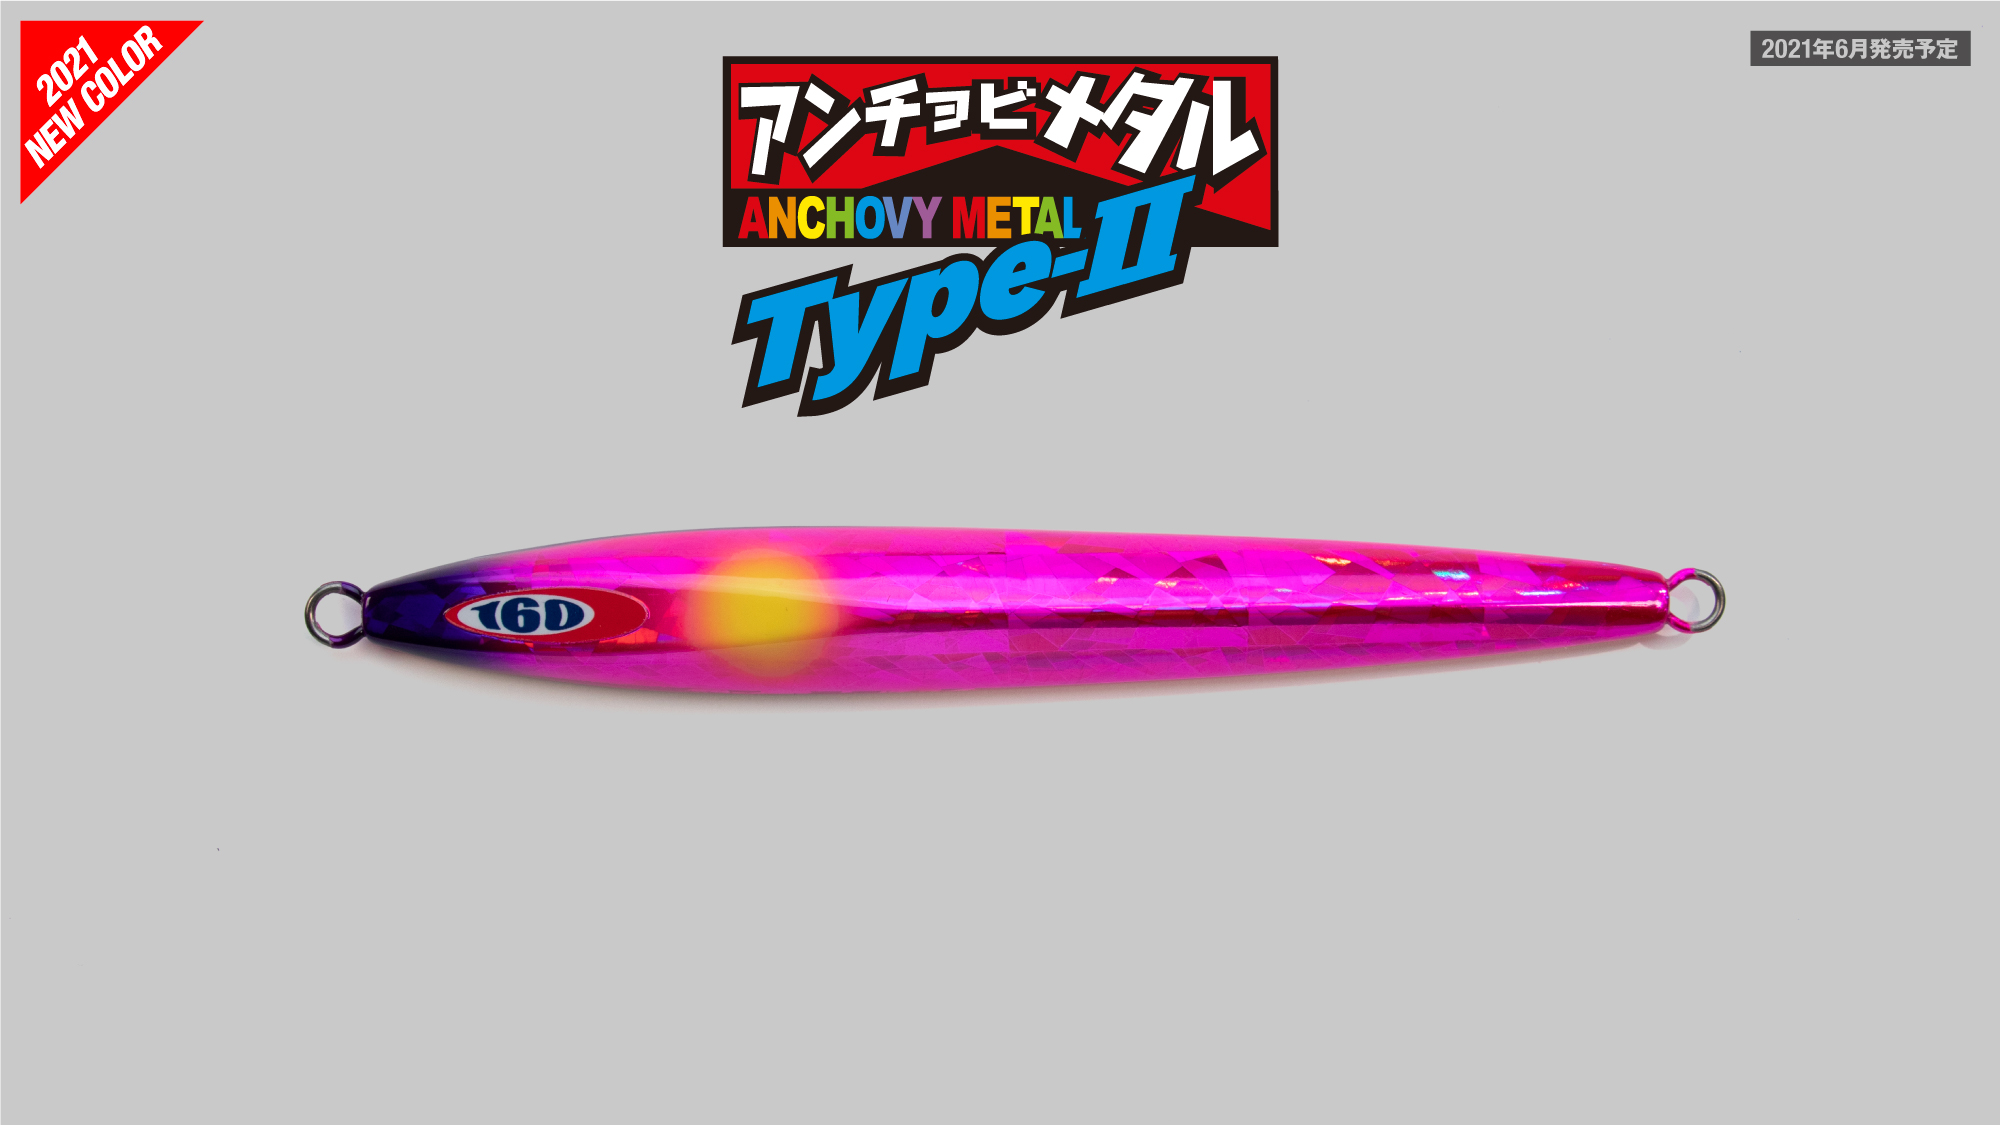 Jackall Anchovy Metal TypeII Slow Slide Metal Jig 200g Red Gold Stripe Japan New